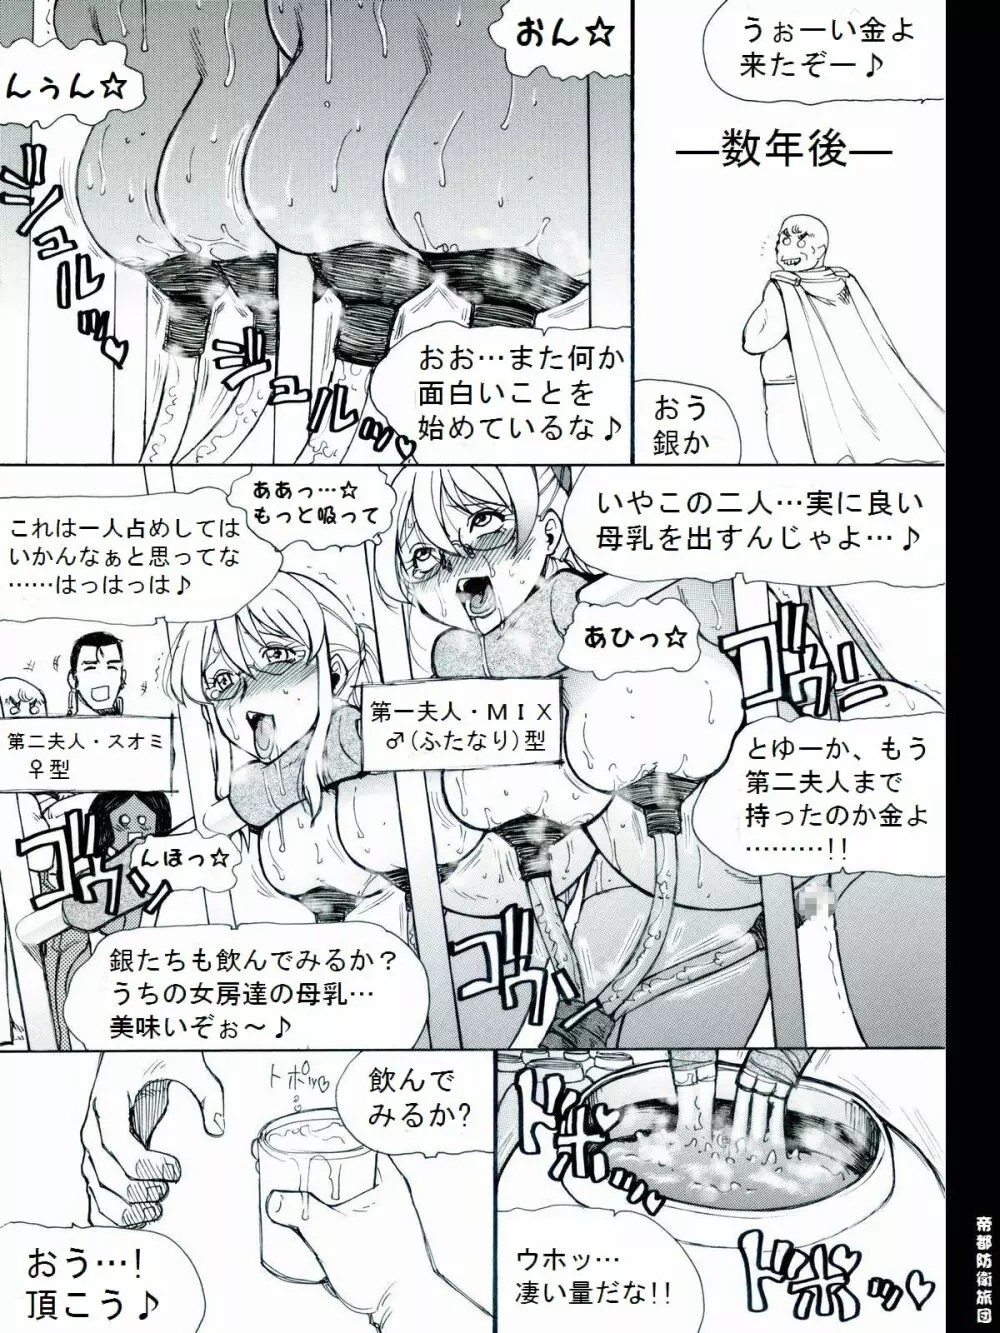 [帝都防衛旅団] RTKBOOK 9-3 「M○Xいぢり(3) 『PANPAN-MAN』」 20ページ